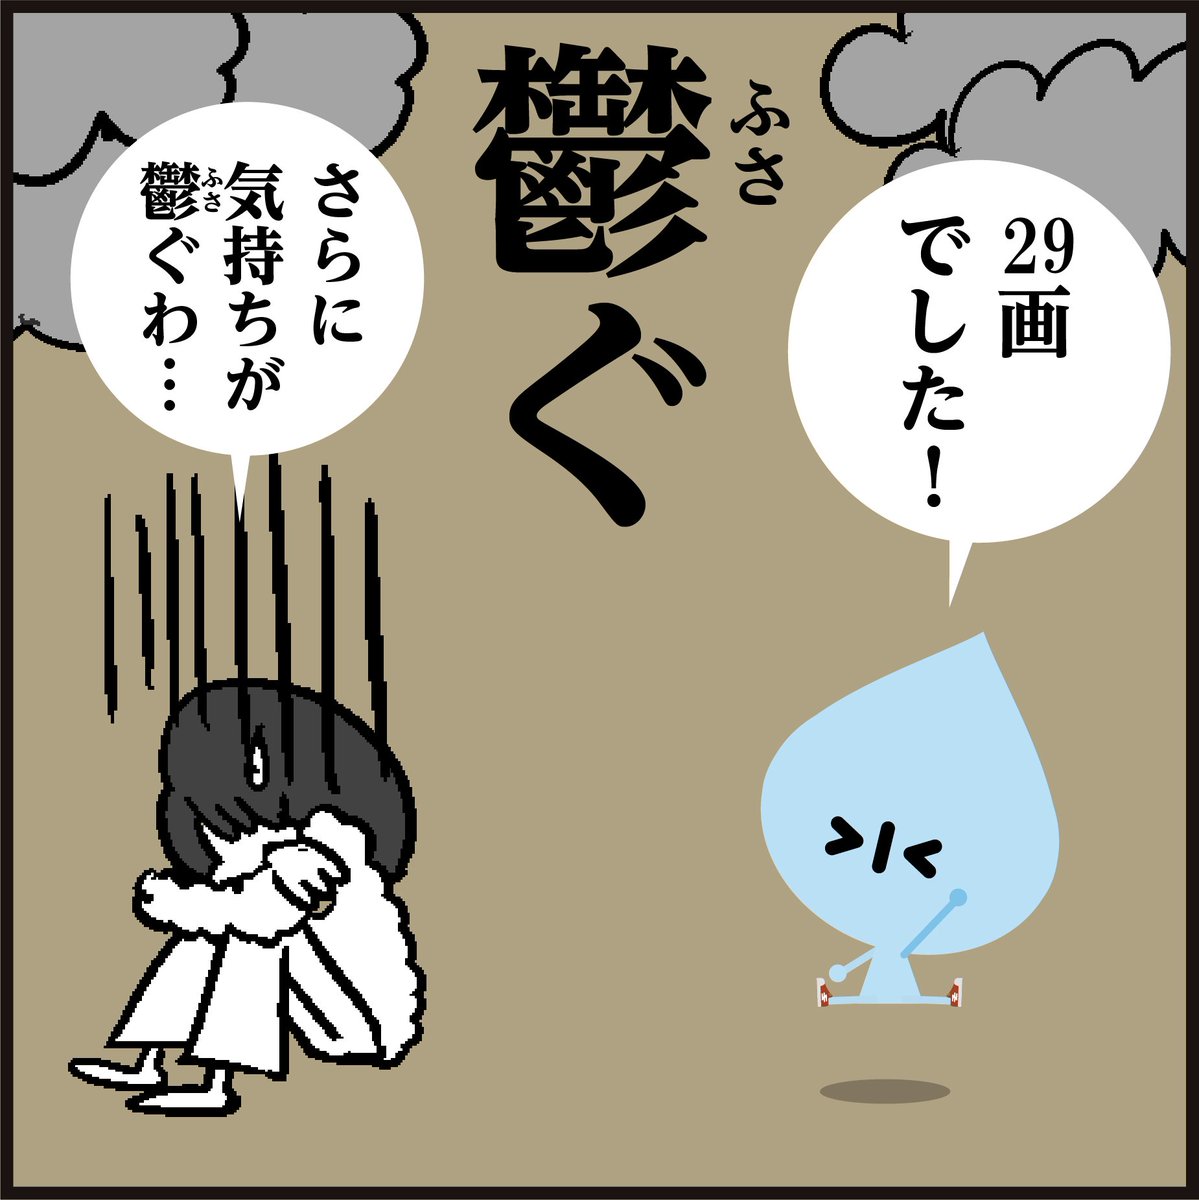 【鬱ぐ】読めましたか?
【鬱】常用漢字の最多画数、何画でしょう??
「読めなくても画数を間違えても鬱がないでー」😉#4コマ漫画
#イラスト #クイズ #豆知識 